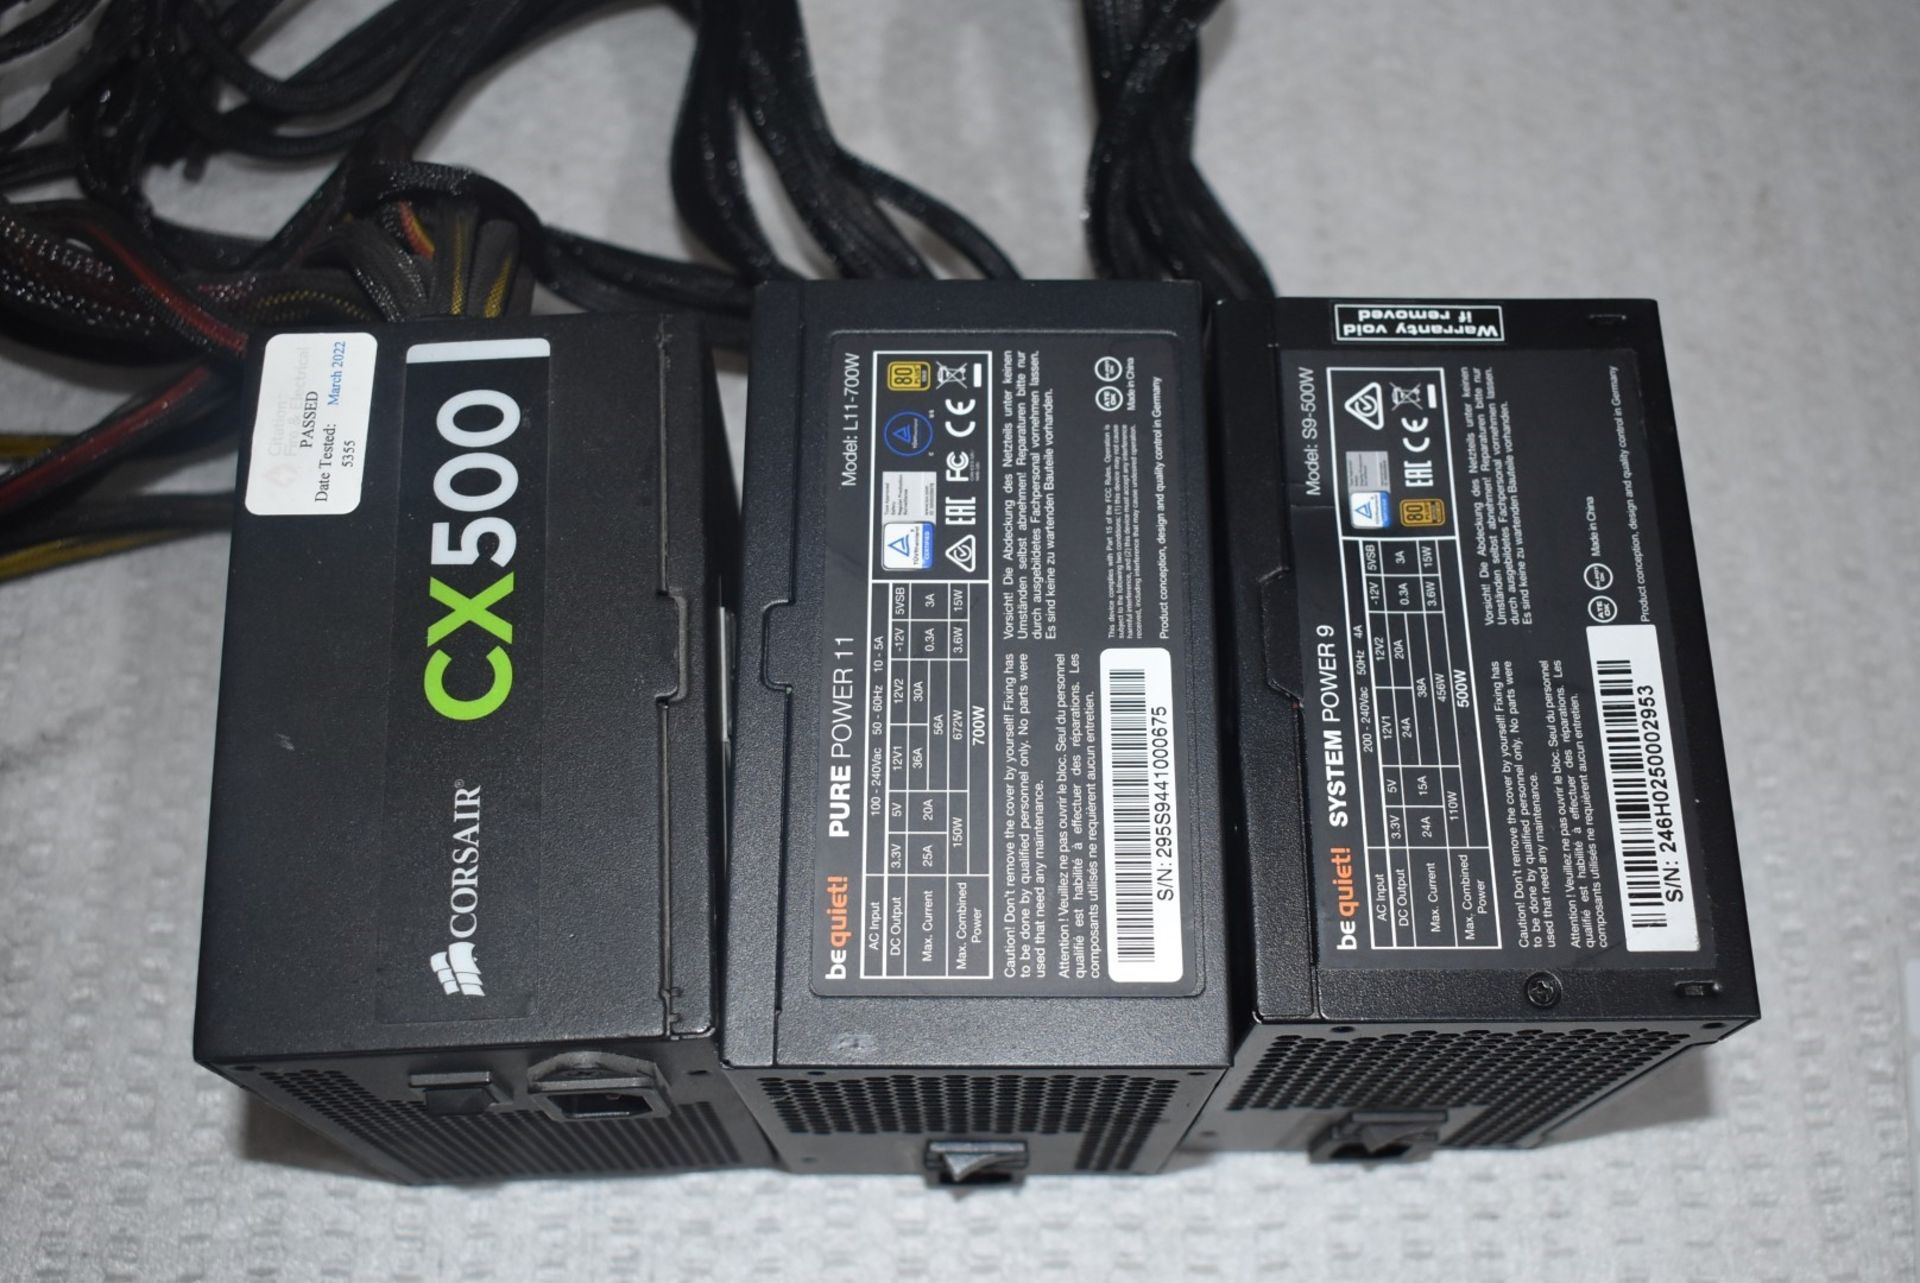 3 x Desktop PC Power Supplies - Brands Include Corsair CX500, BeQuiet Purepower 9 and BeQuiet - Image 2 of 3